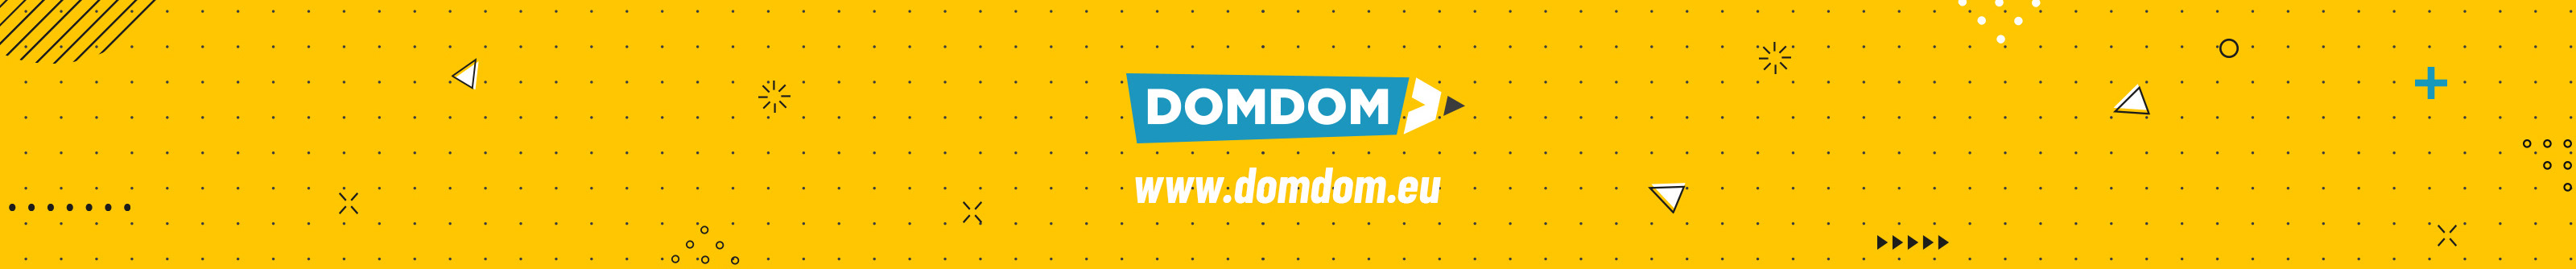 Domdom .eu's profile banner